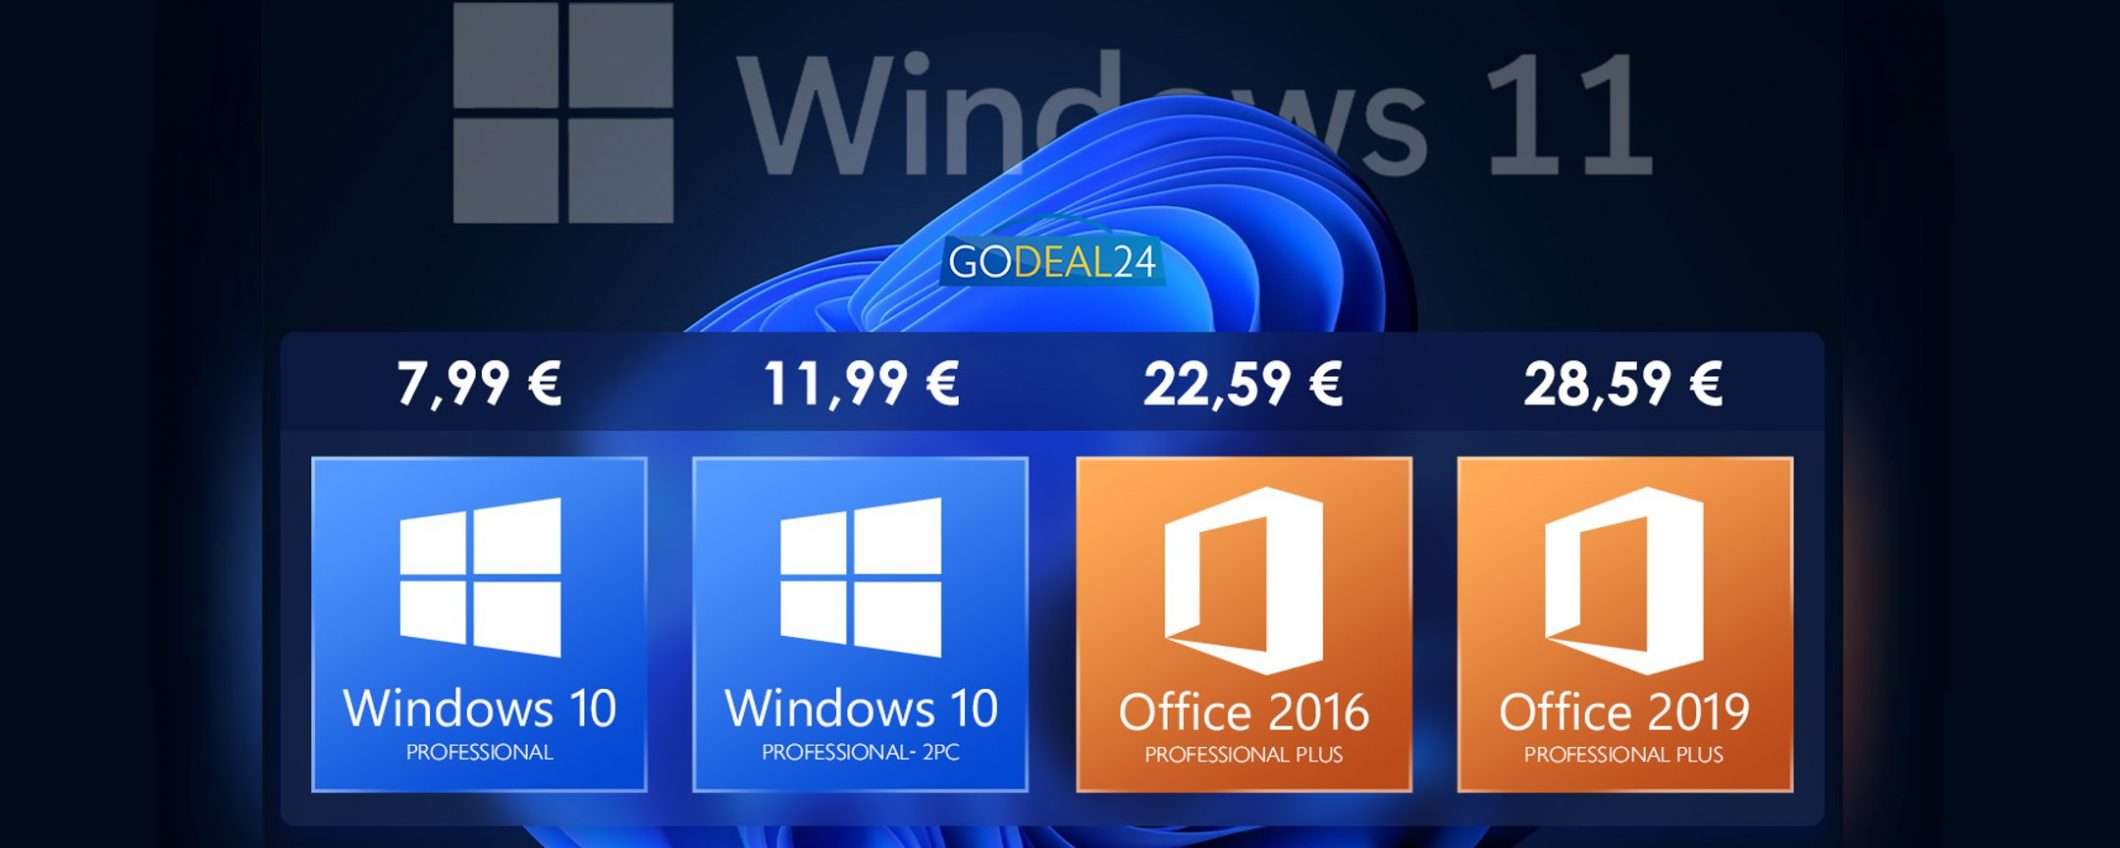 Windows 11 sarà gratis: bastano 6€ per prepararsi con Win10